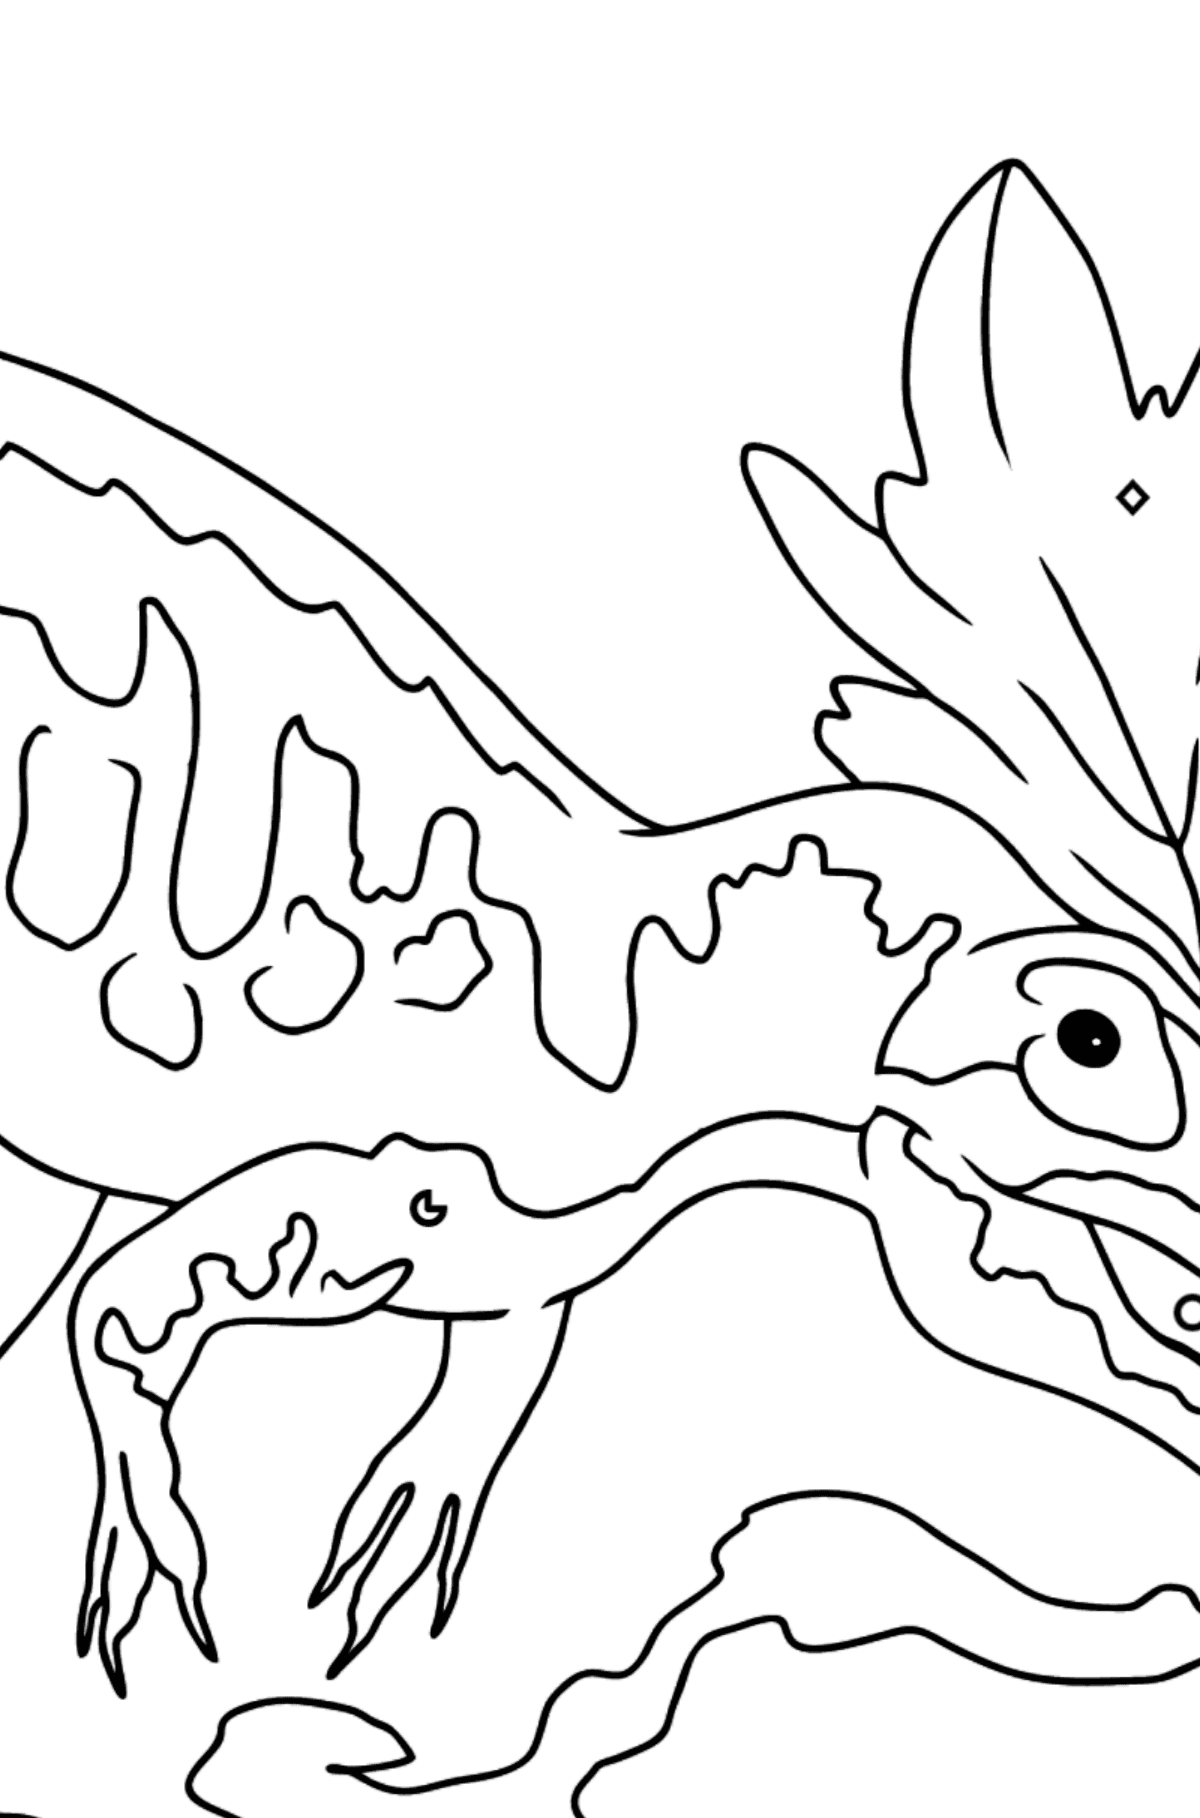 Раскраска Аллозавр для малышей - Картинка высокого качества для Детей